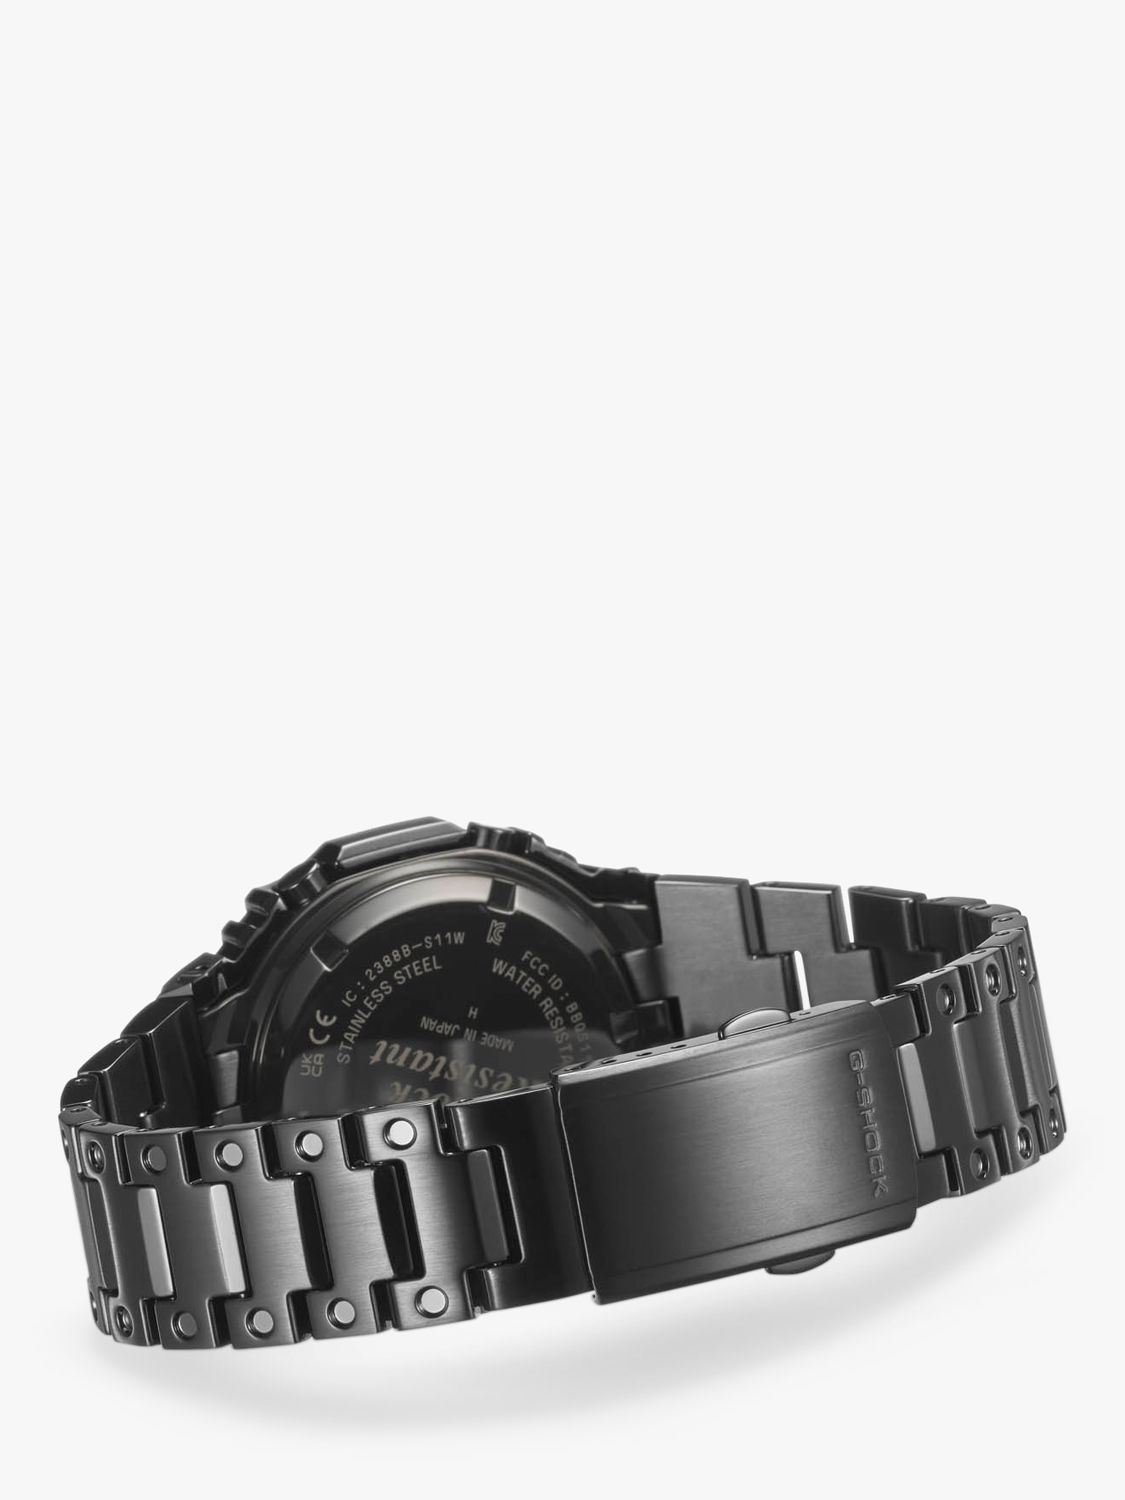 Buy Casio Men's G-Shock Carbon Core Guard Solar Bracelet Strap Watch Online at johnlewis.com